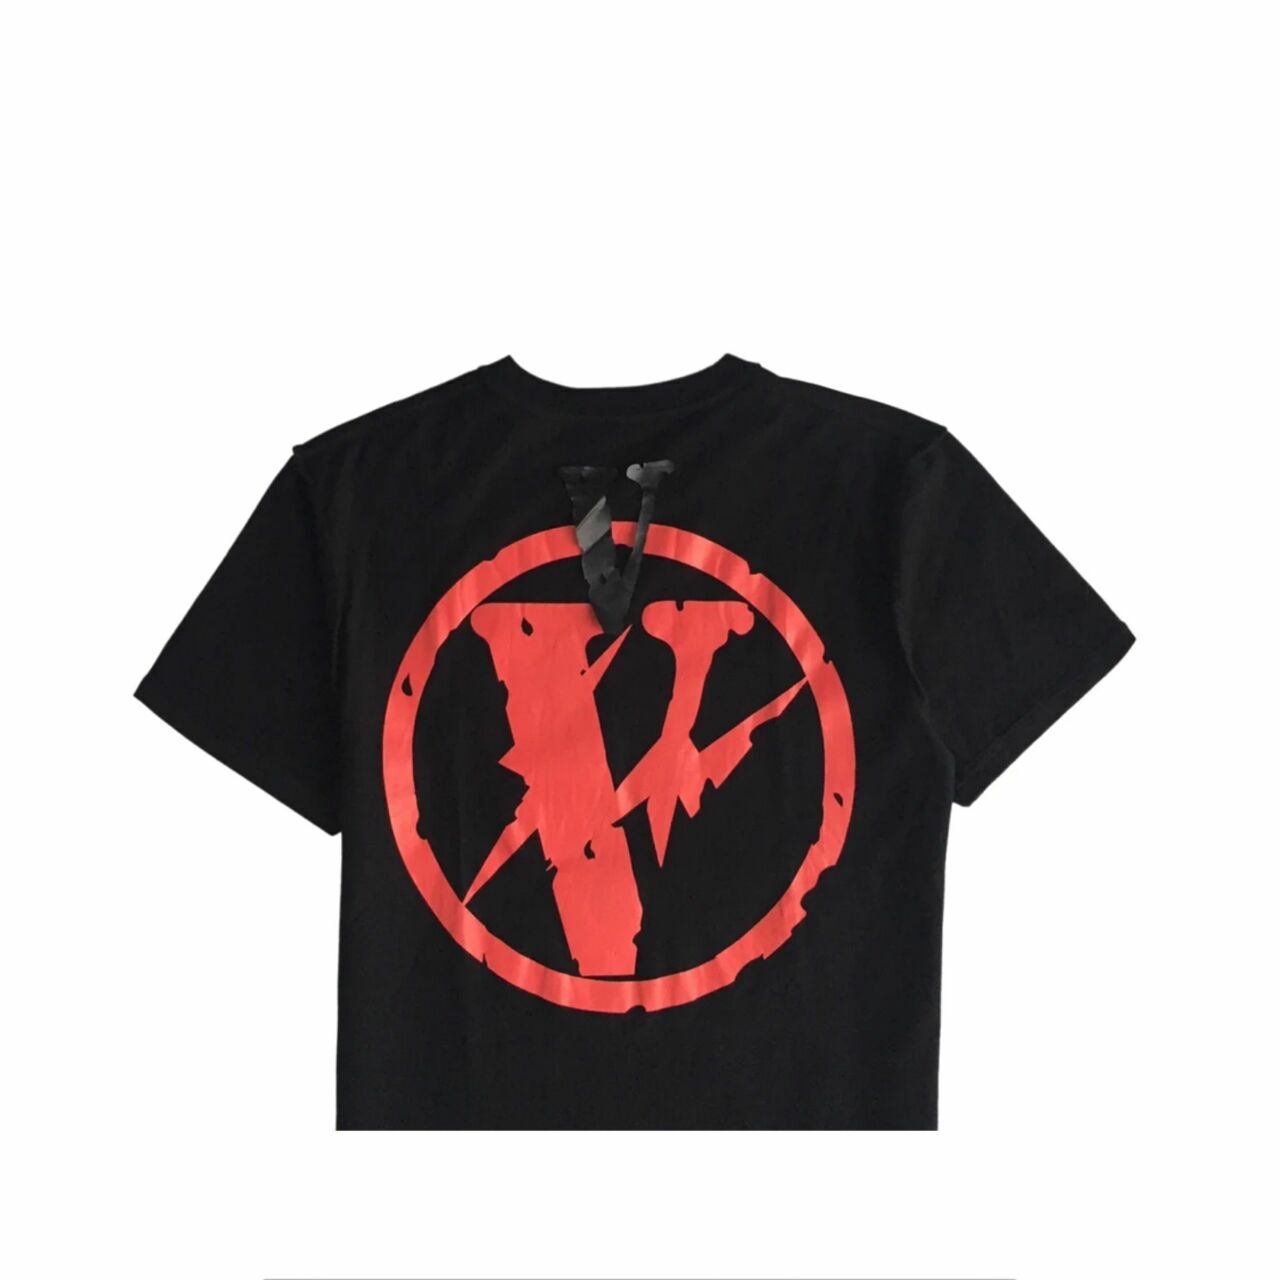 Vlone x Fragment Design Reversible Staple T-Shirt